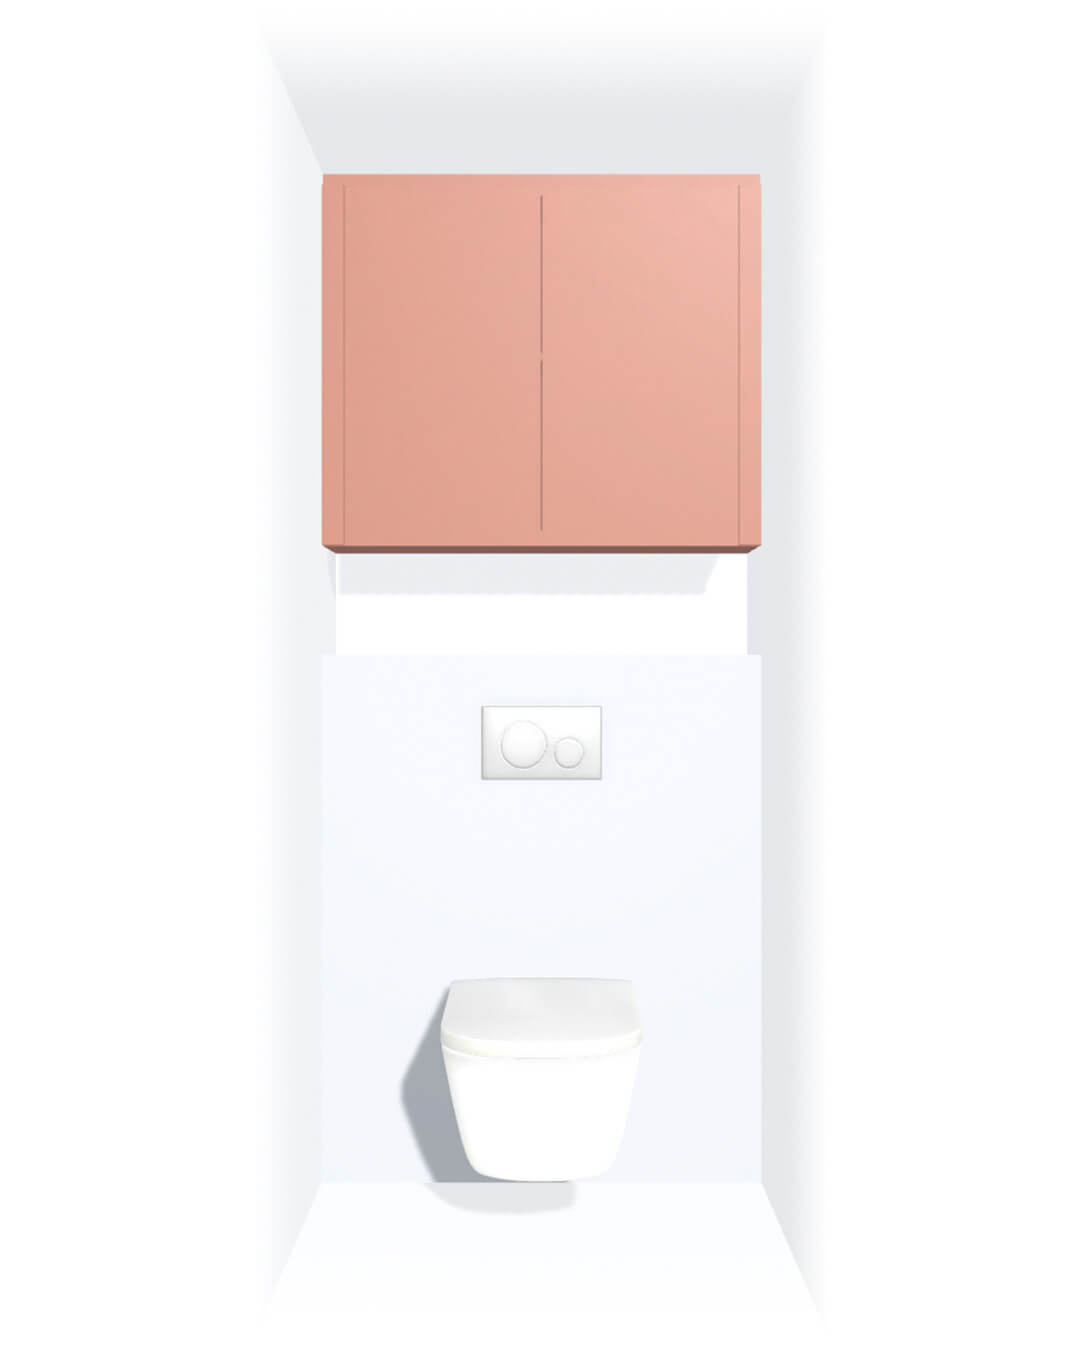 Zwevende toiletkast op maat boven wc tussen twee muren in de kleur Dusty Coral